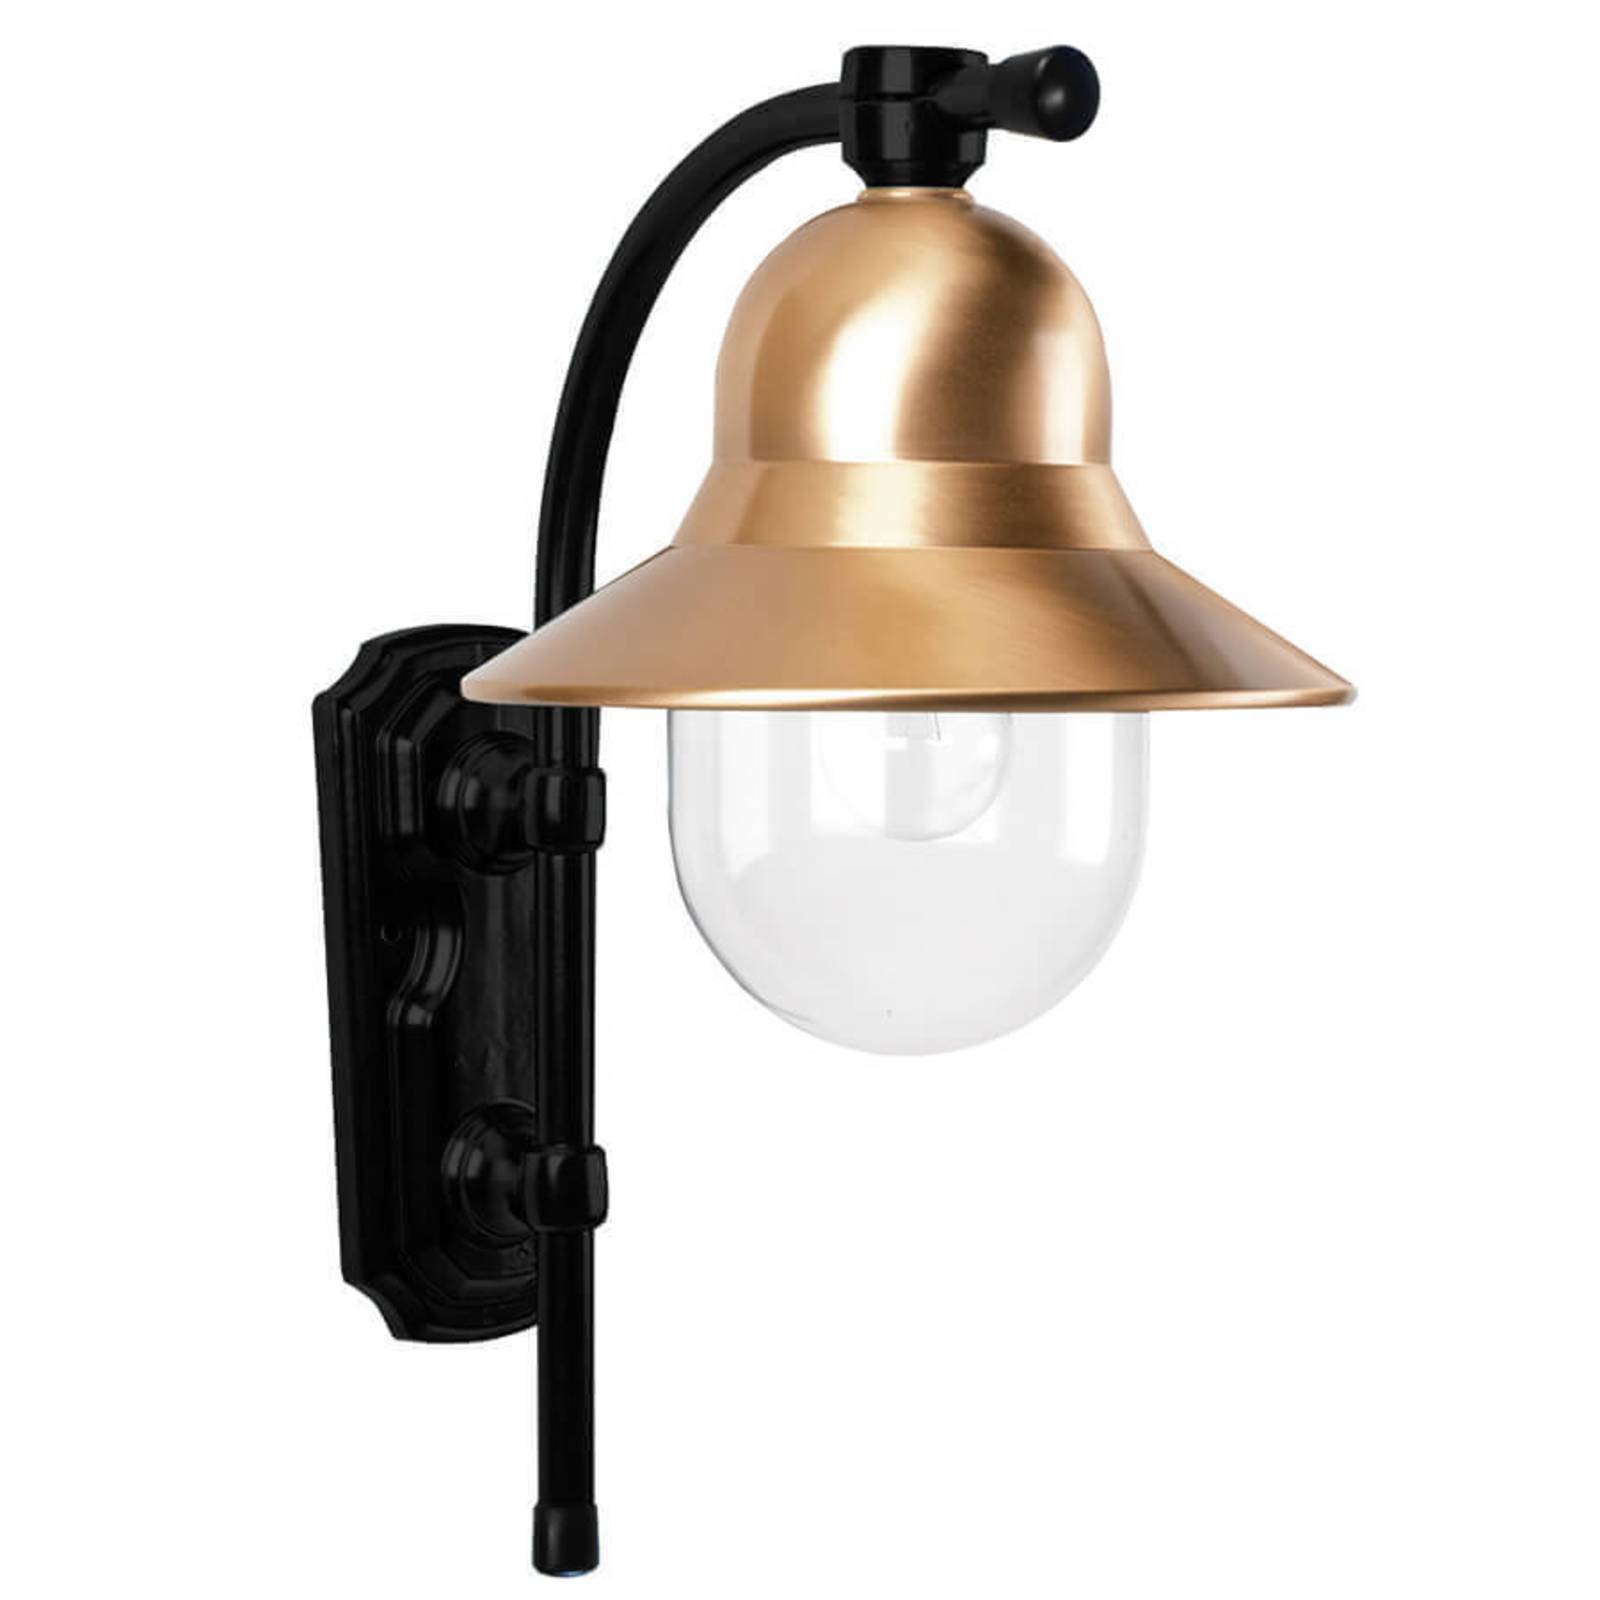 K.s. verlichting időtlen toscane kültéri fali lámpa, fekete